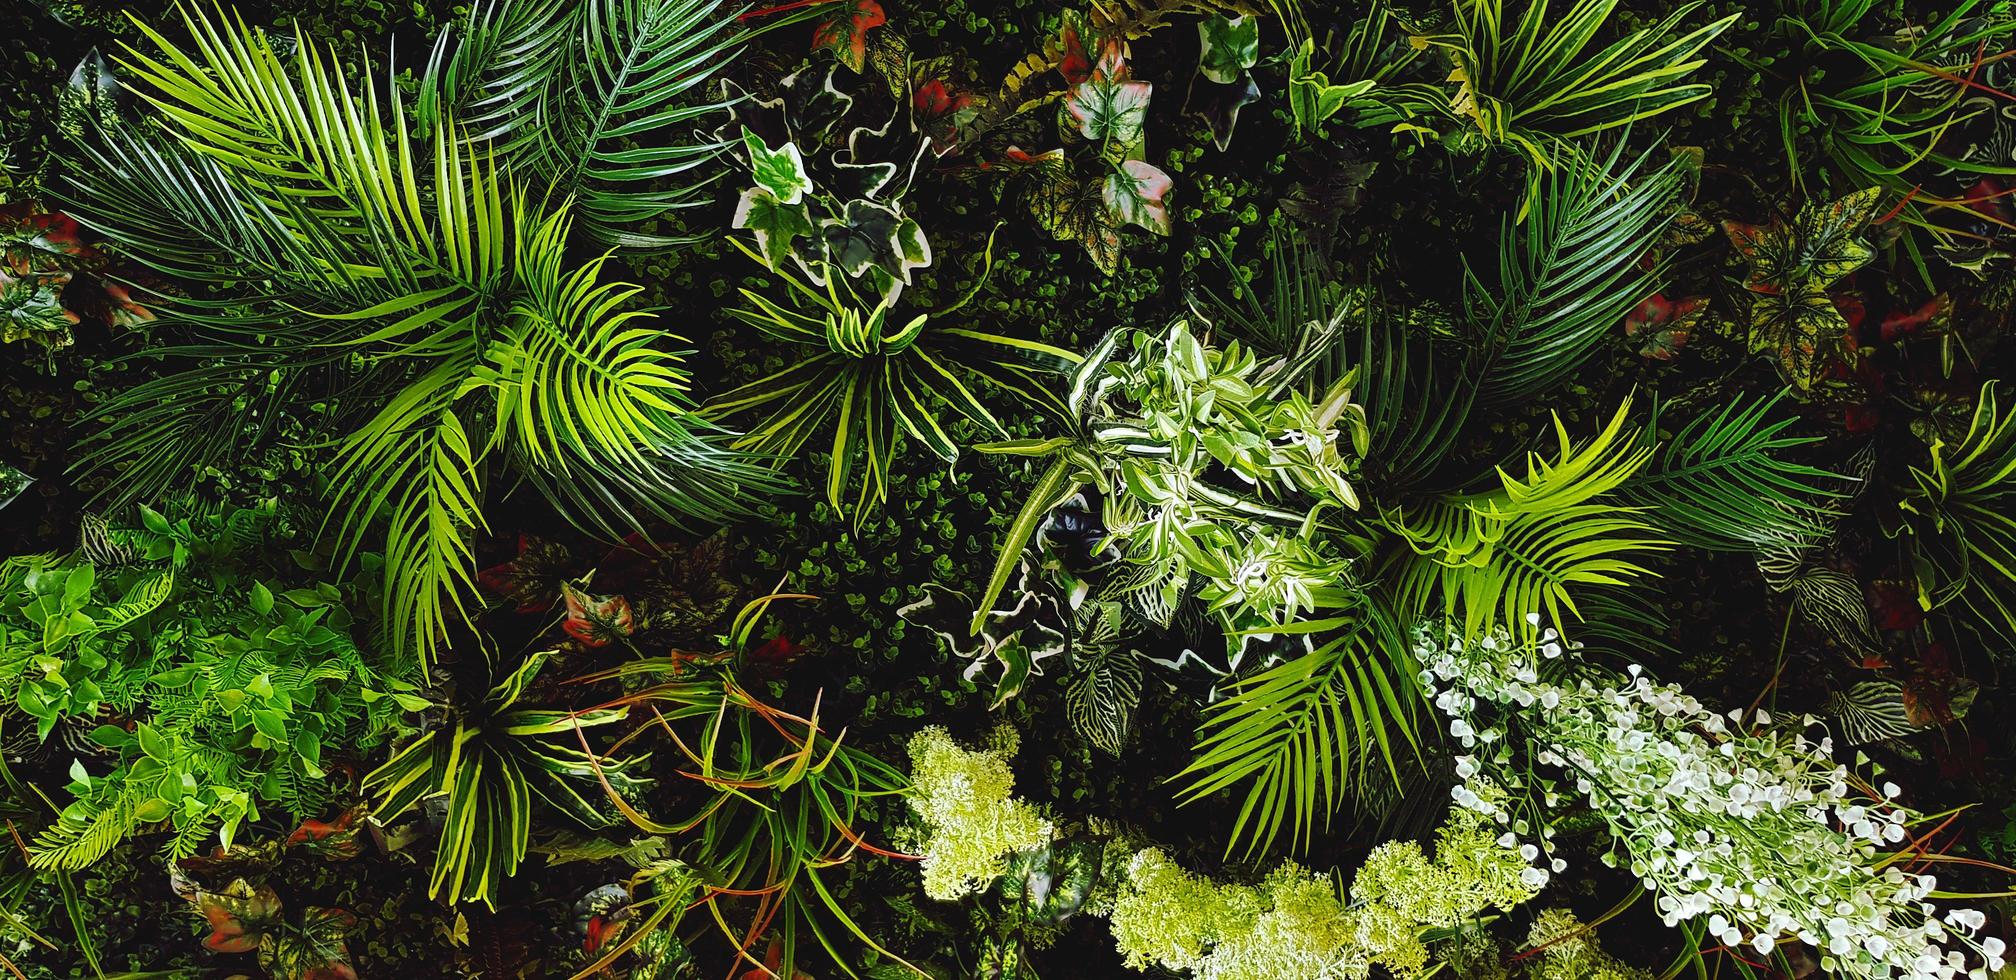 grüne Schlingpflanze, Rebe oder Efeu und rote Blätter Wand für den Hintergrund. natürliche Tapeten oder Naturmuster. Frische Saison foto